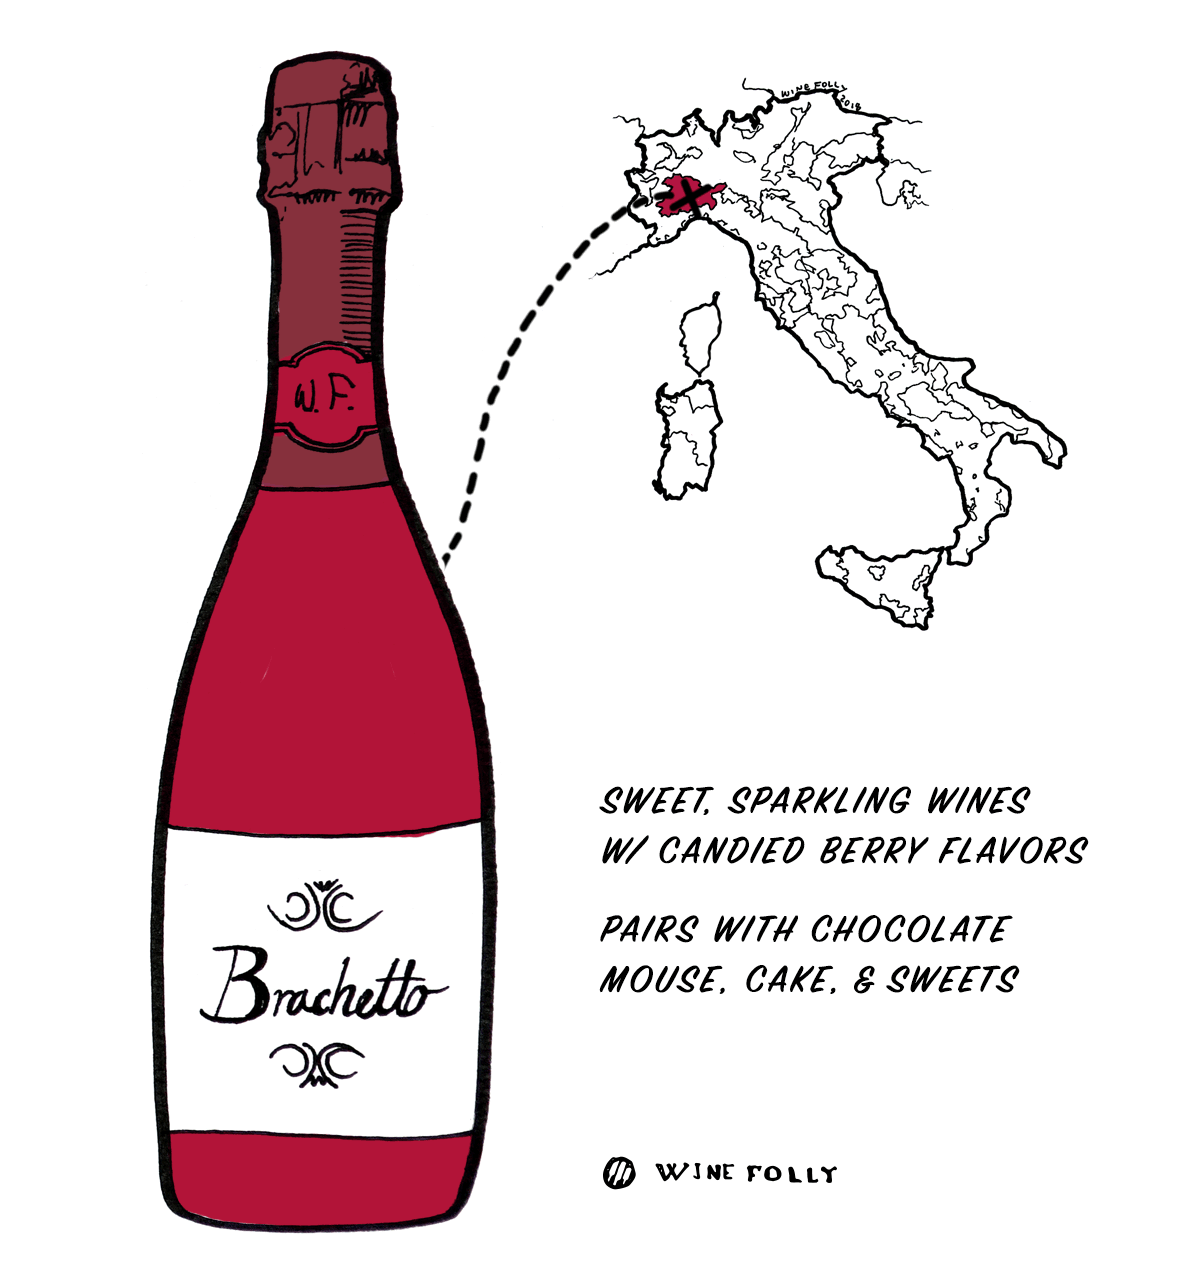 Червено вино от грозде Brachetto от Италия - Чудесен избор за начинаещи в италианско вино - Илюстрация от Wine Folly